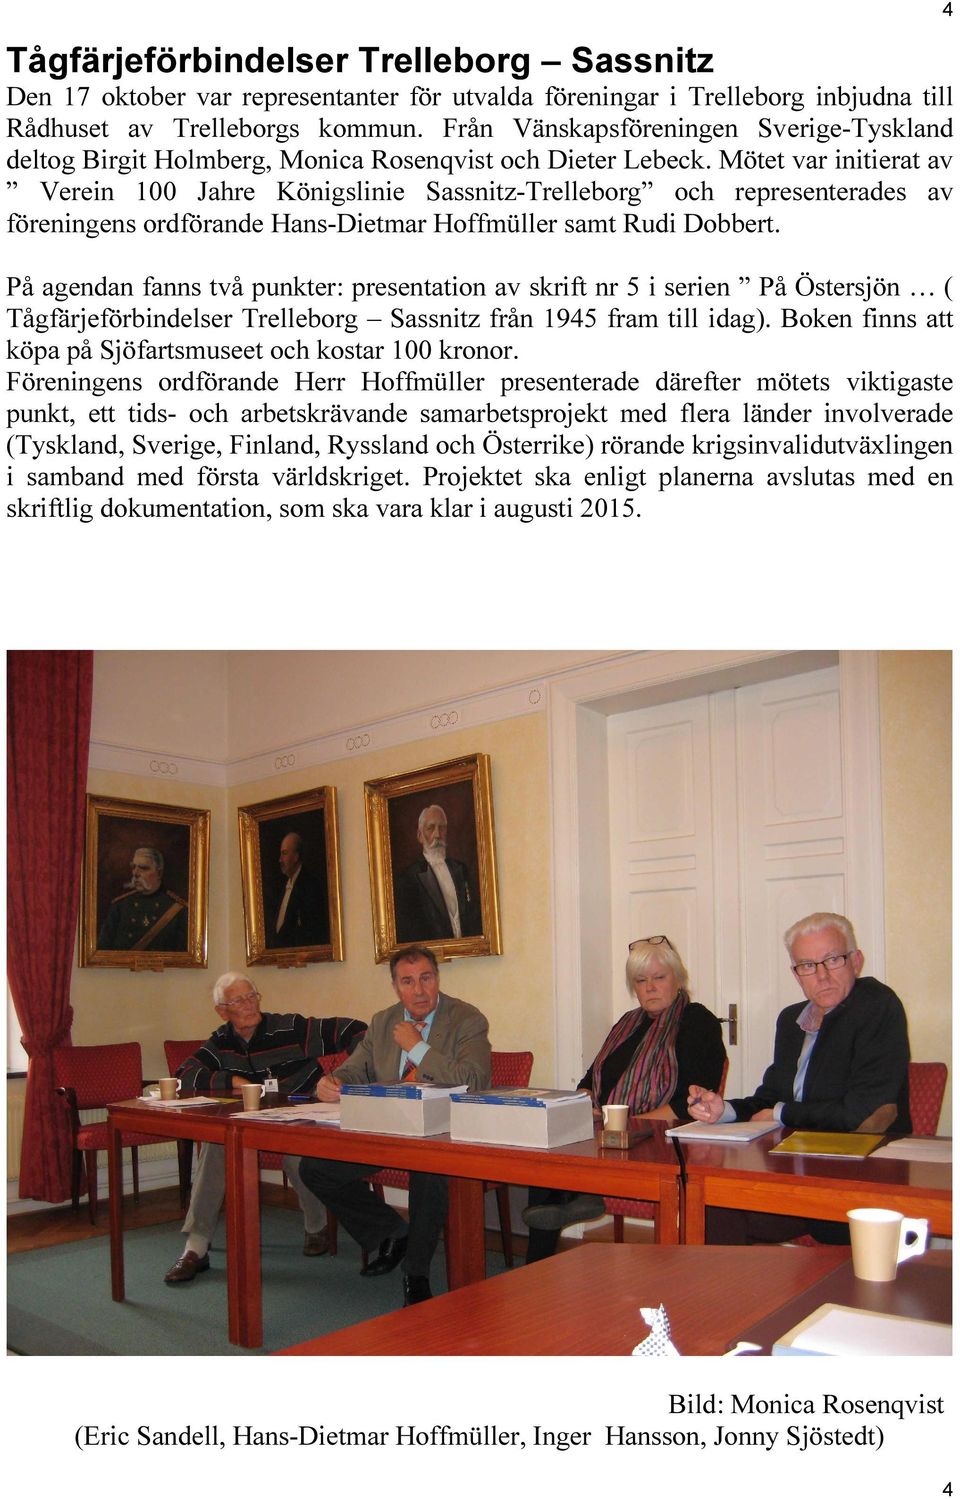 Mötet var initierat av Verein 100 Jahre Königslinie Sassnitz-Trelleborg och representerades av föreningens ordförande Hans-Dietmar Hoffmüller samt Rudi Dobbert.